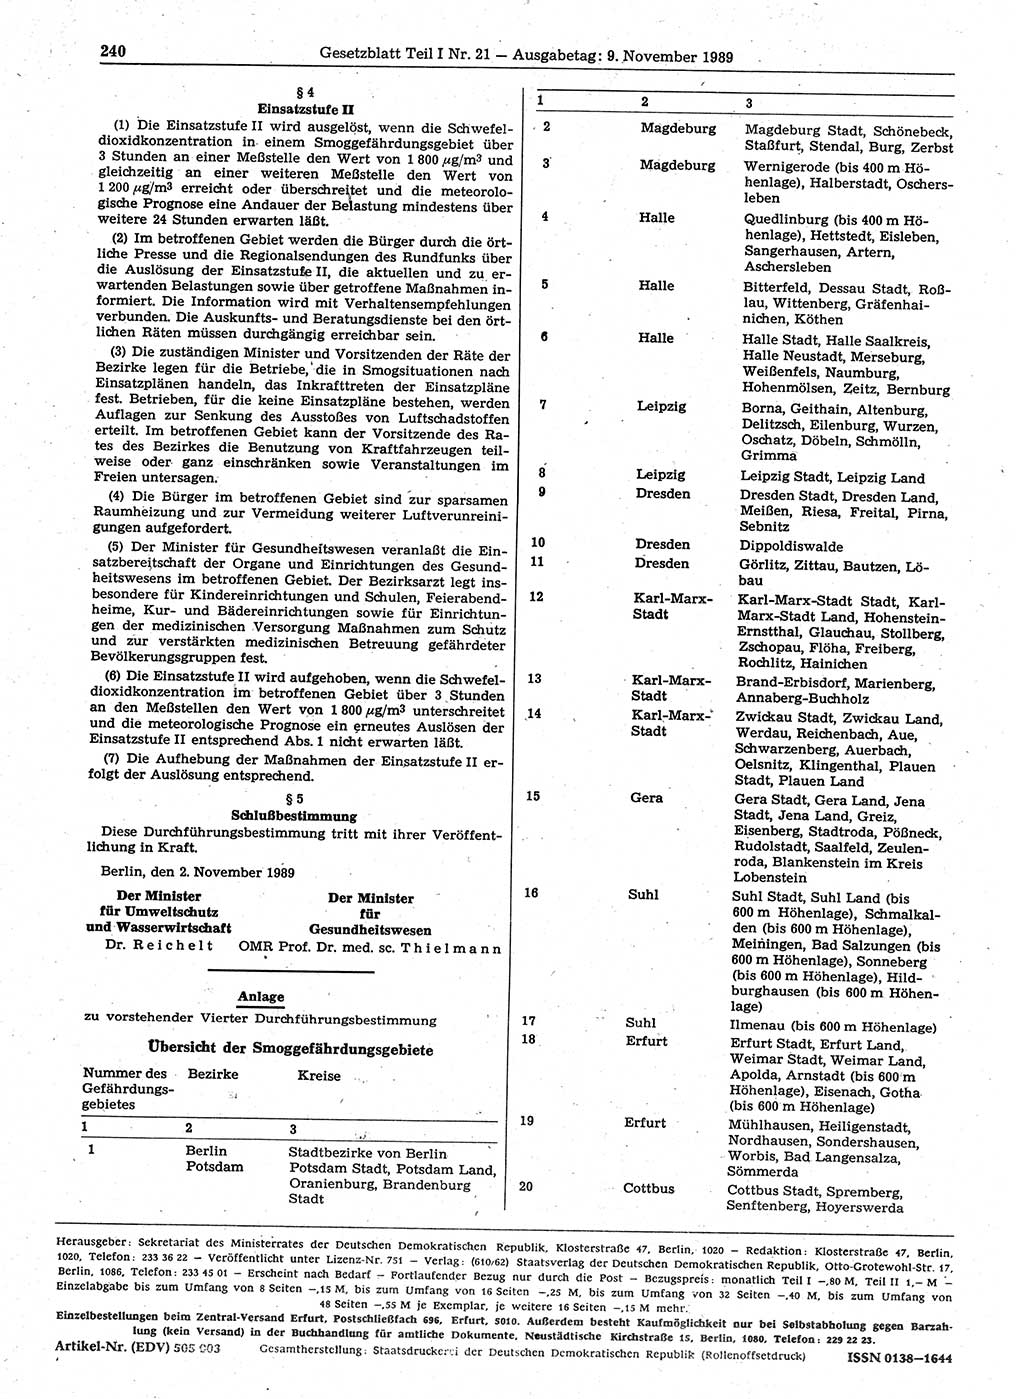 Gesetzblatt (GBl.) der Deutschen Demokratischen Republik (DDR) Teil Ⅰ 1989, Seite 240 (GBl. DDR Ⅰ 1989, S. 240)